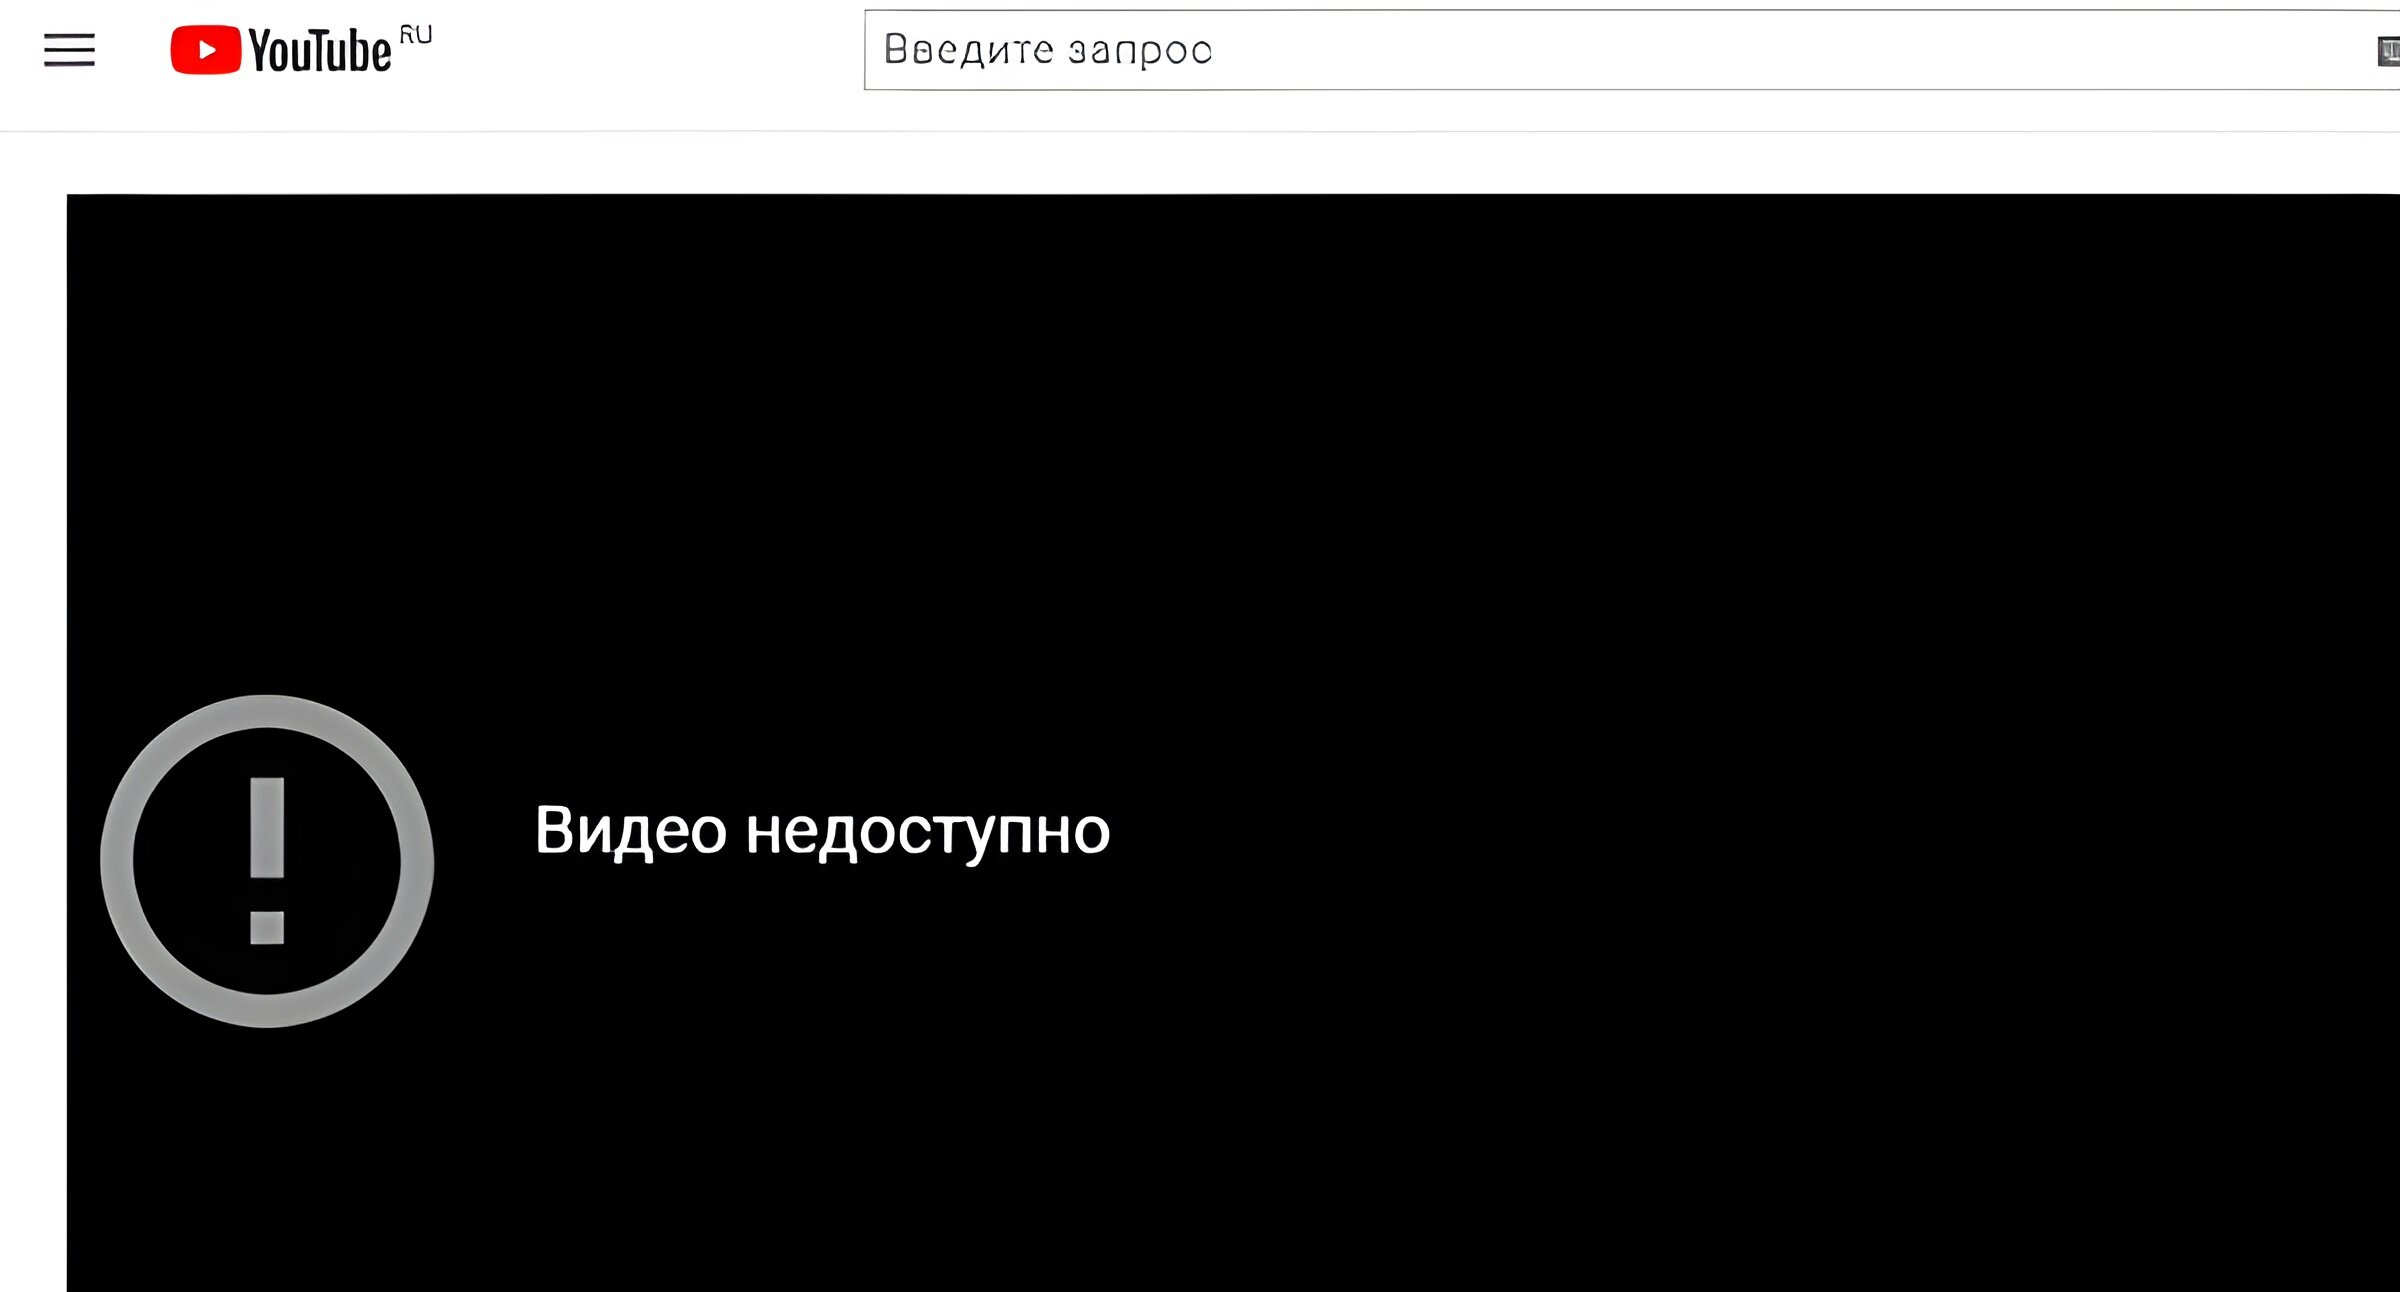 Сайт youtube недоступен. Ютуб "видео не доступно". Доступно на ютубе.